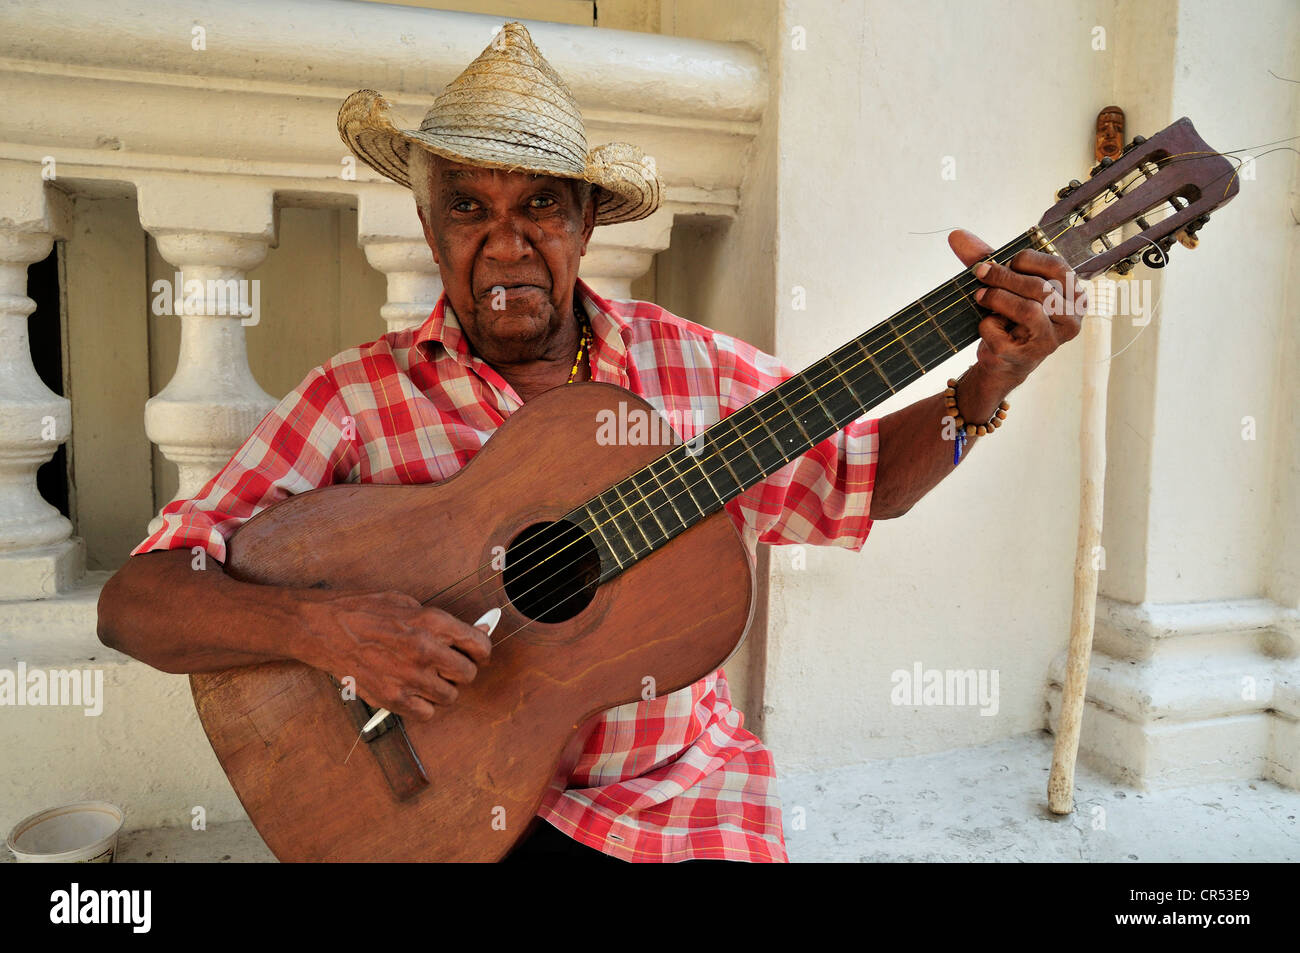 Street musician, busker, guitarist, Santiago de Cuba, Cuba, Caribbean Stock Photo